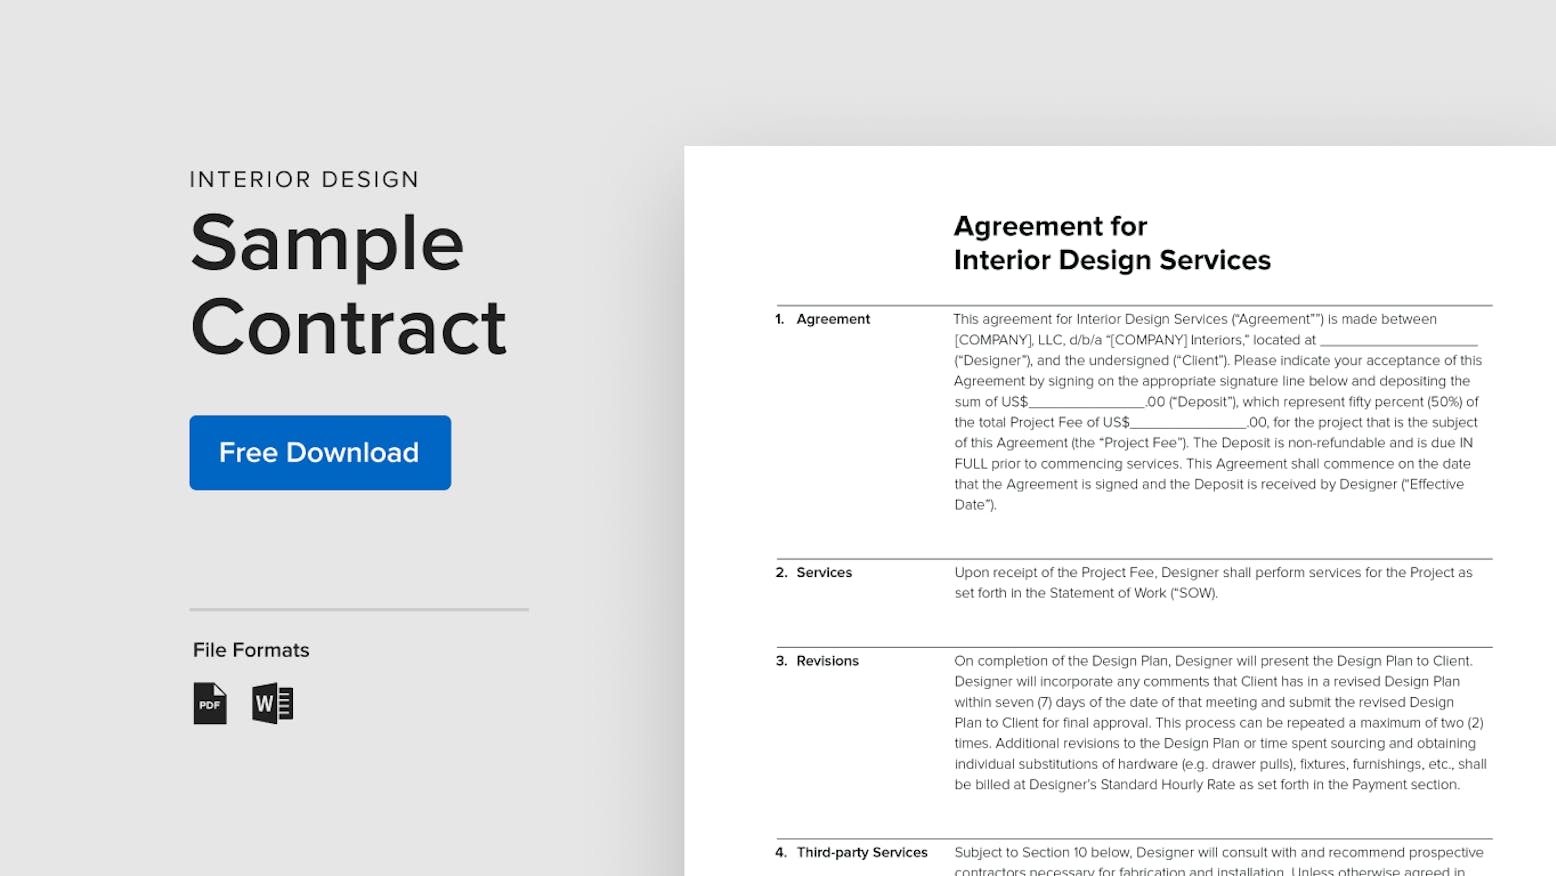 15 Steps To Prepare A Legal Interior Design Contract